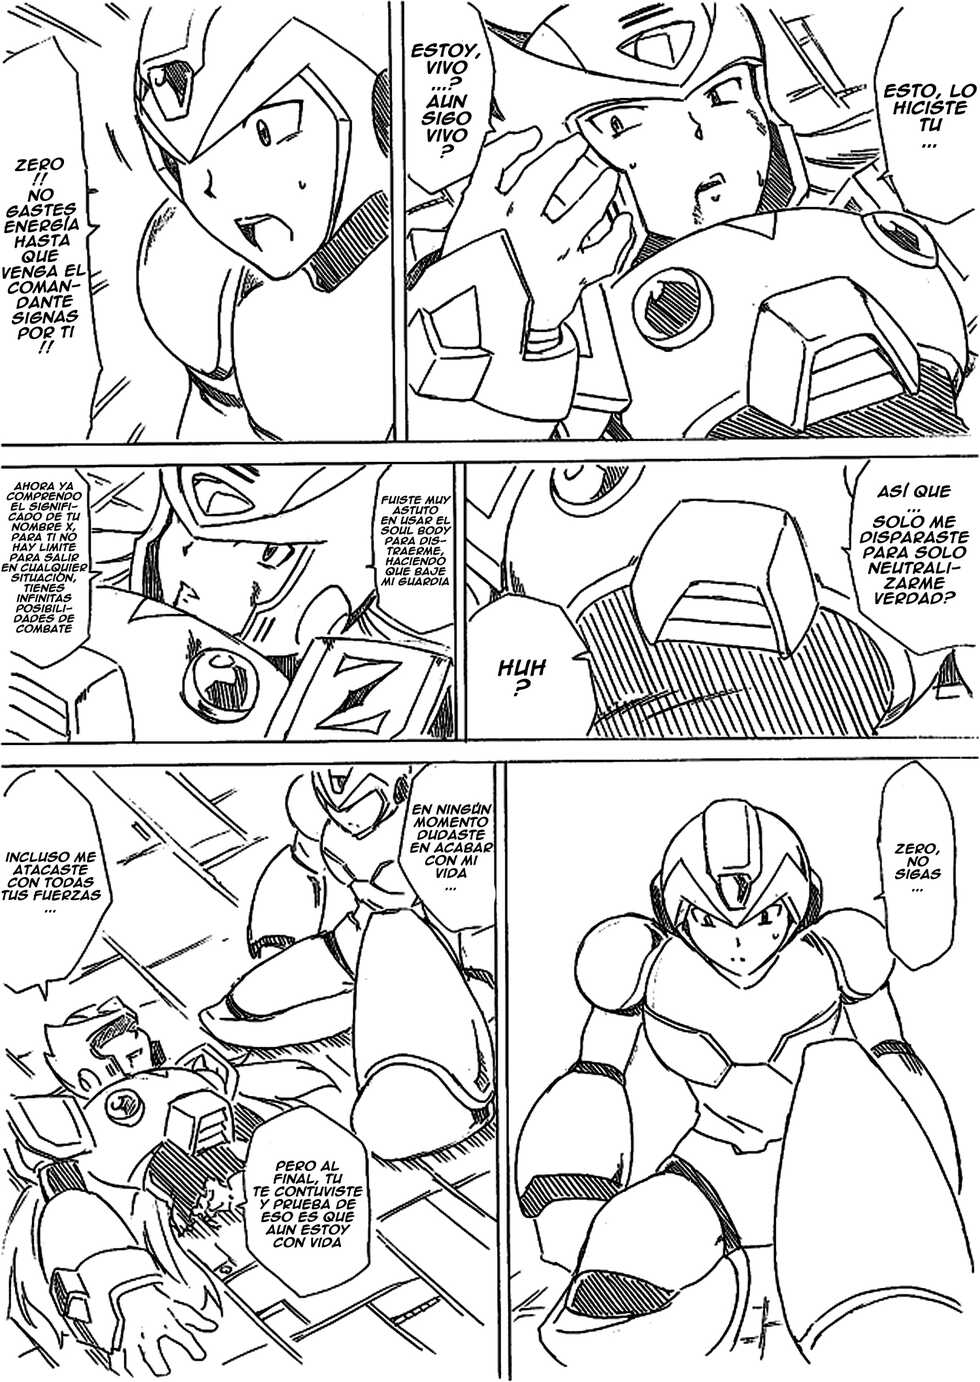 Rockman X - X vs Zero (Spanish) - Page 24